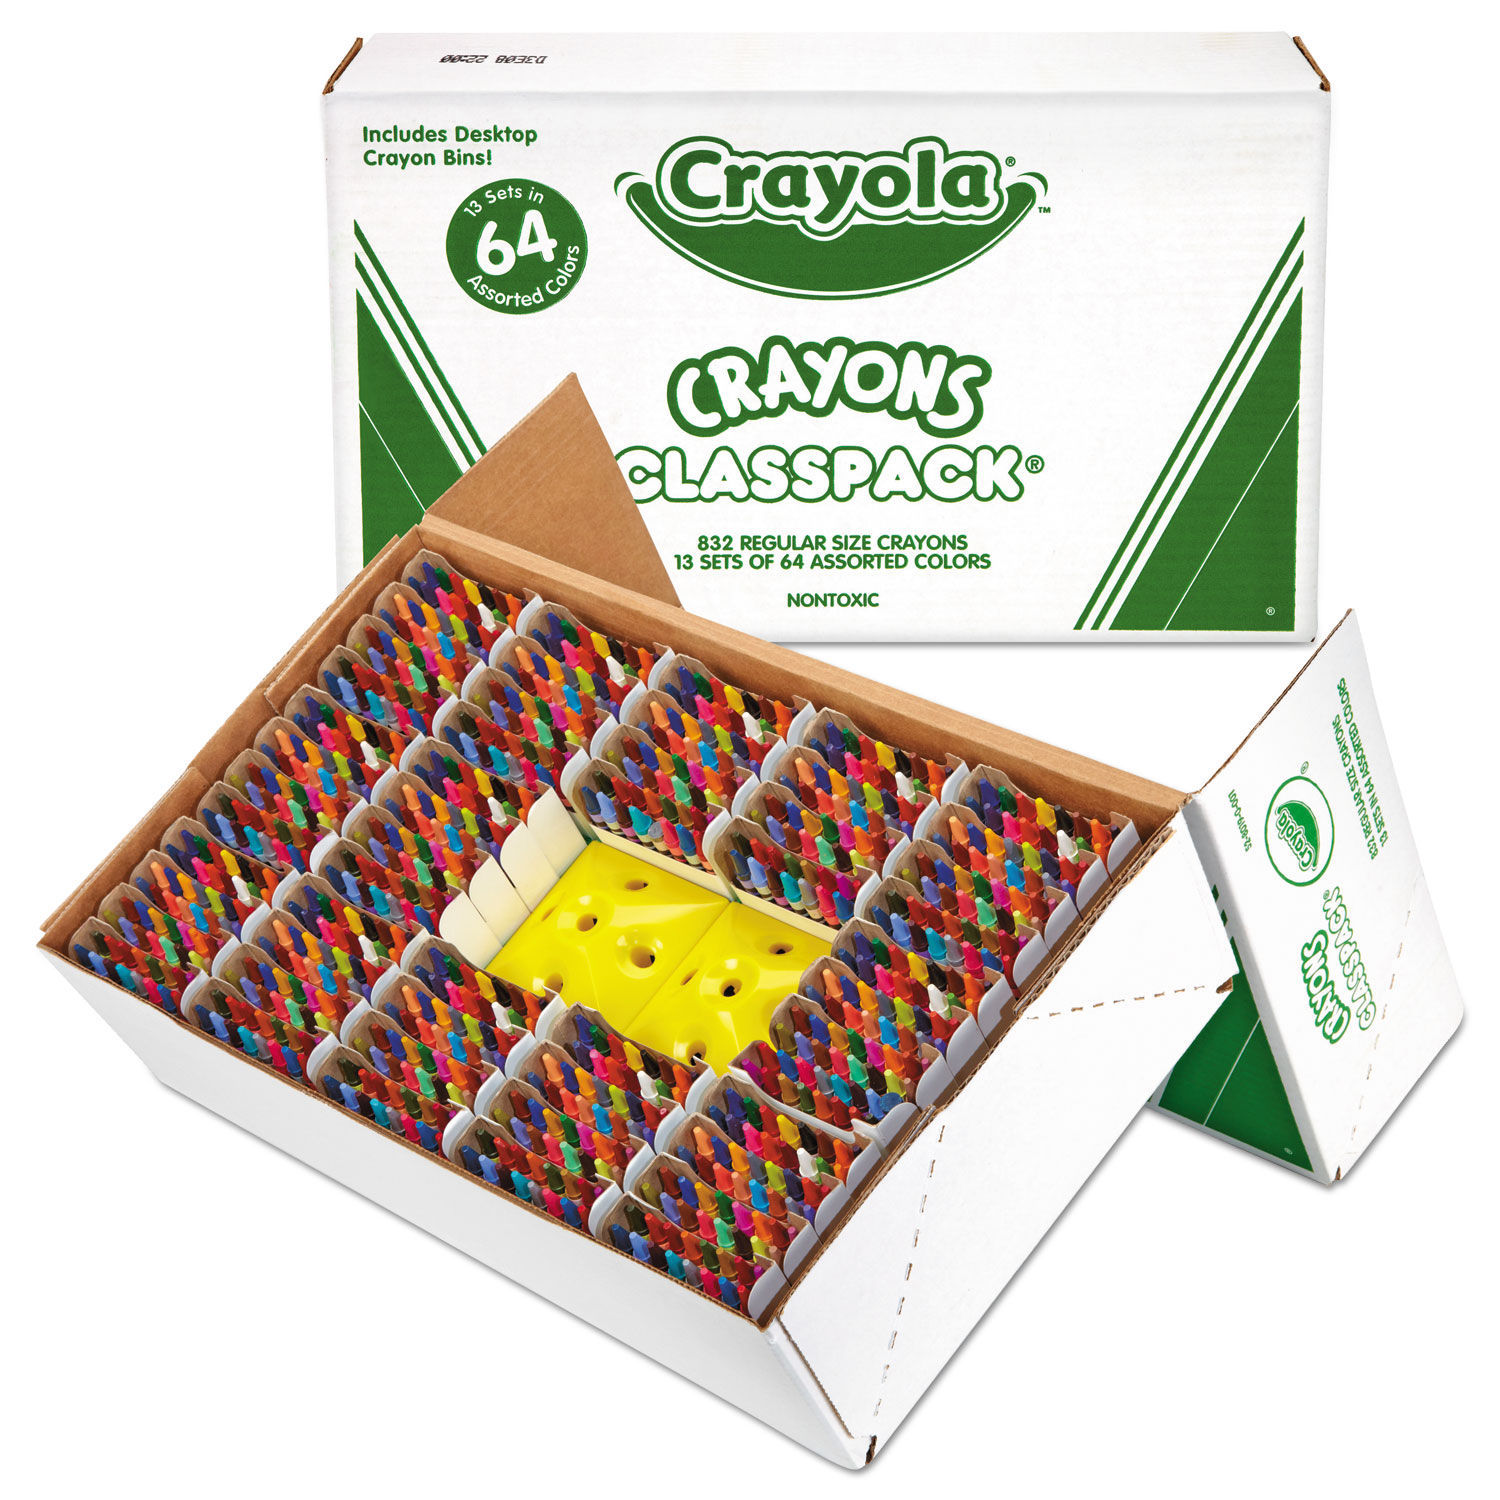 Classpack de 208 crayons de couleur Evolution dont 80 gratuits